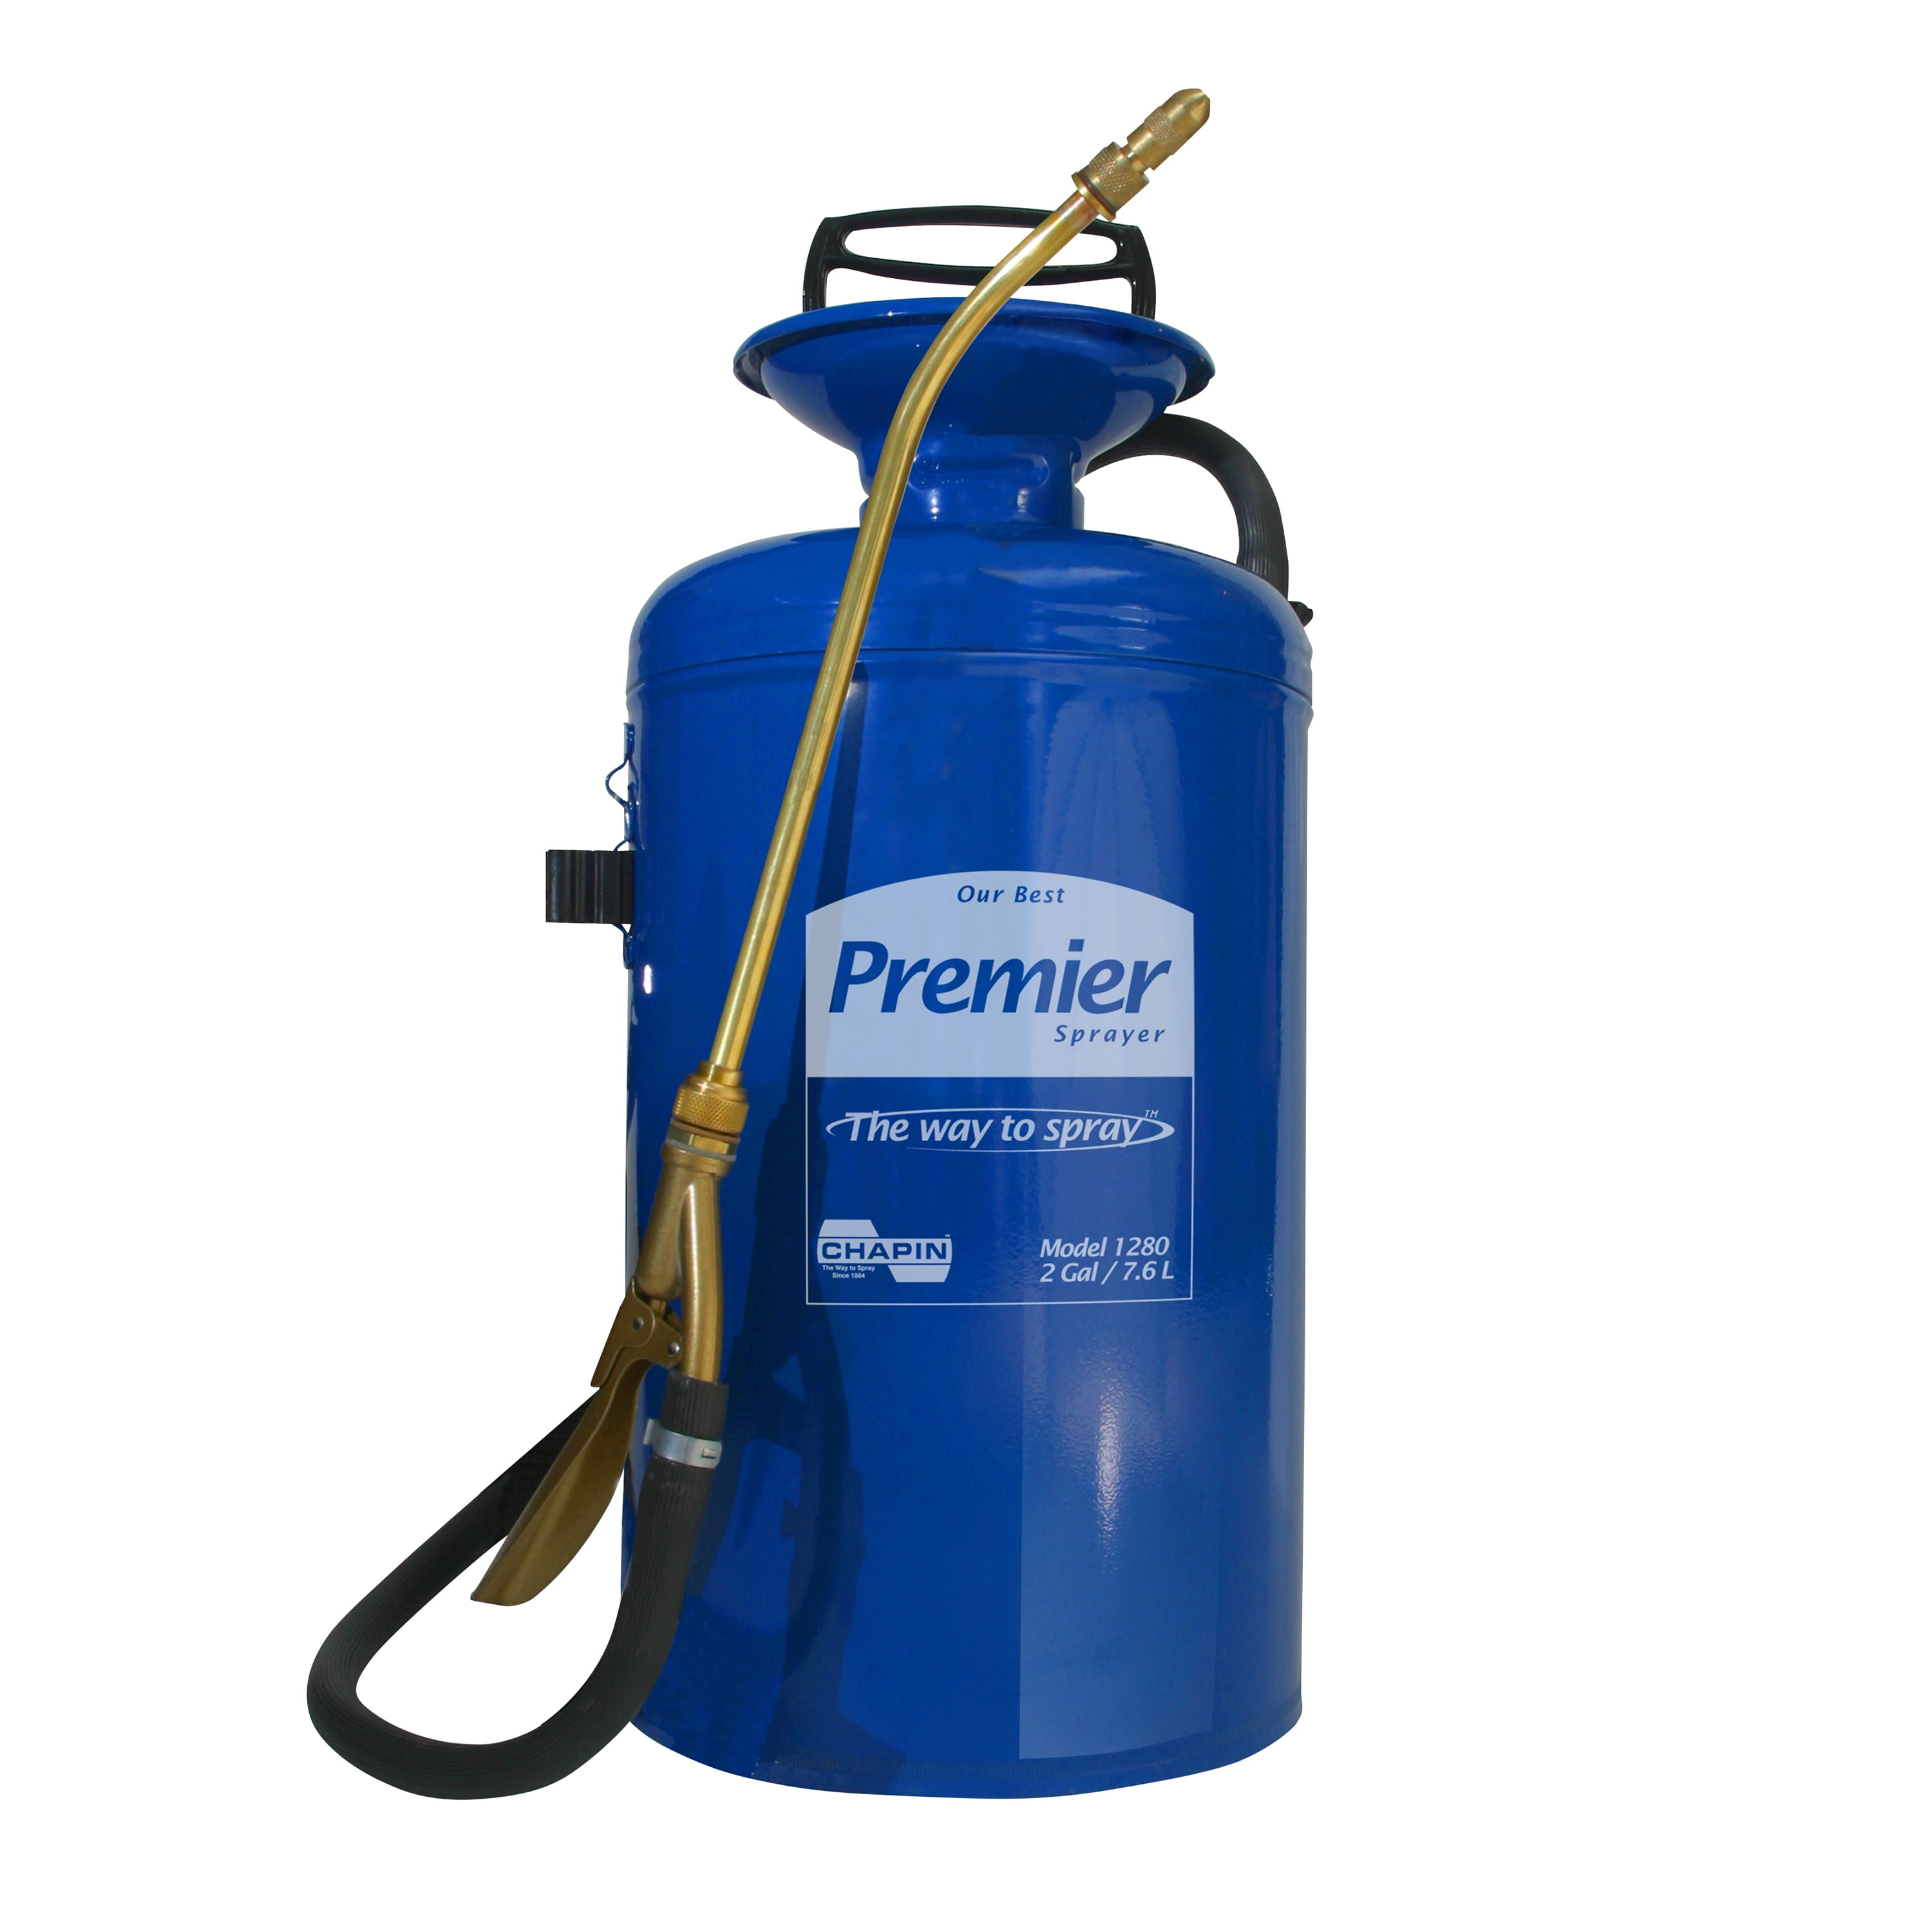 Chapin 21220XP Premier Pro 2 Gallon Poly Sprayer 